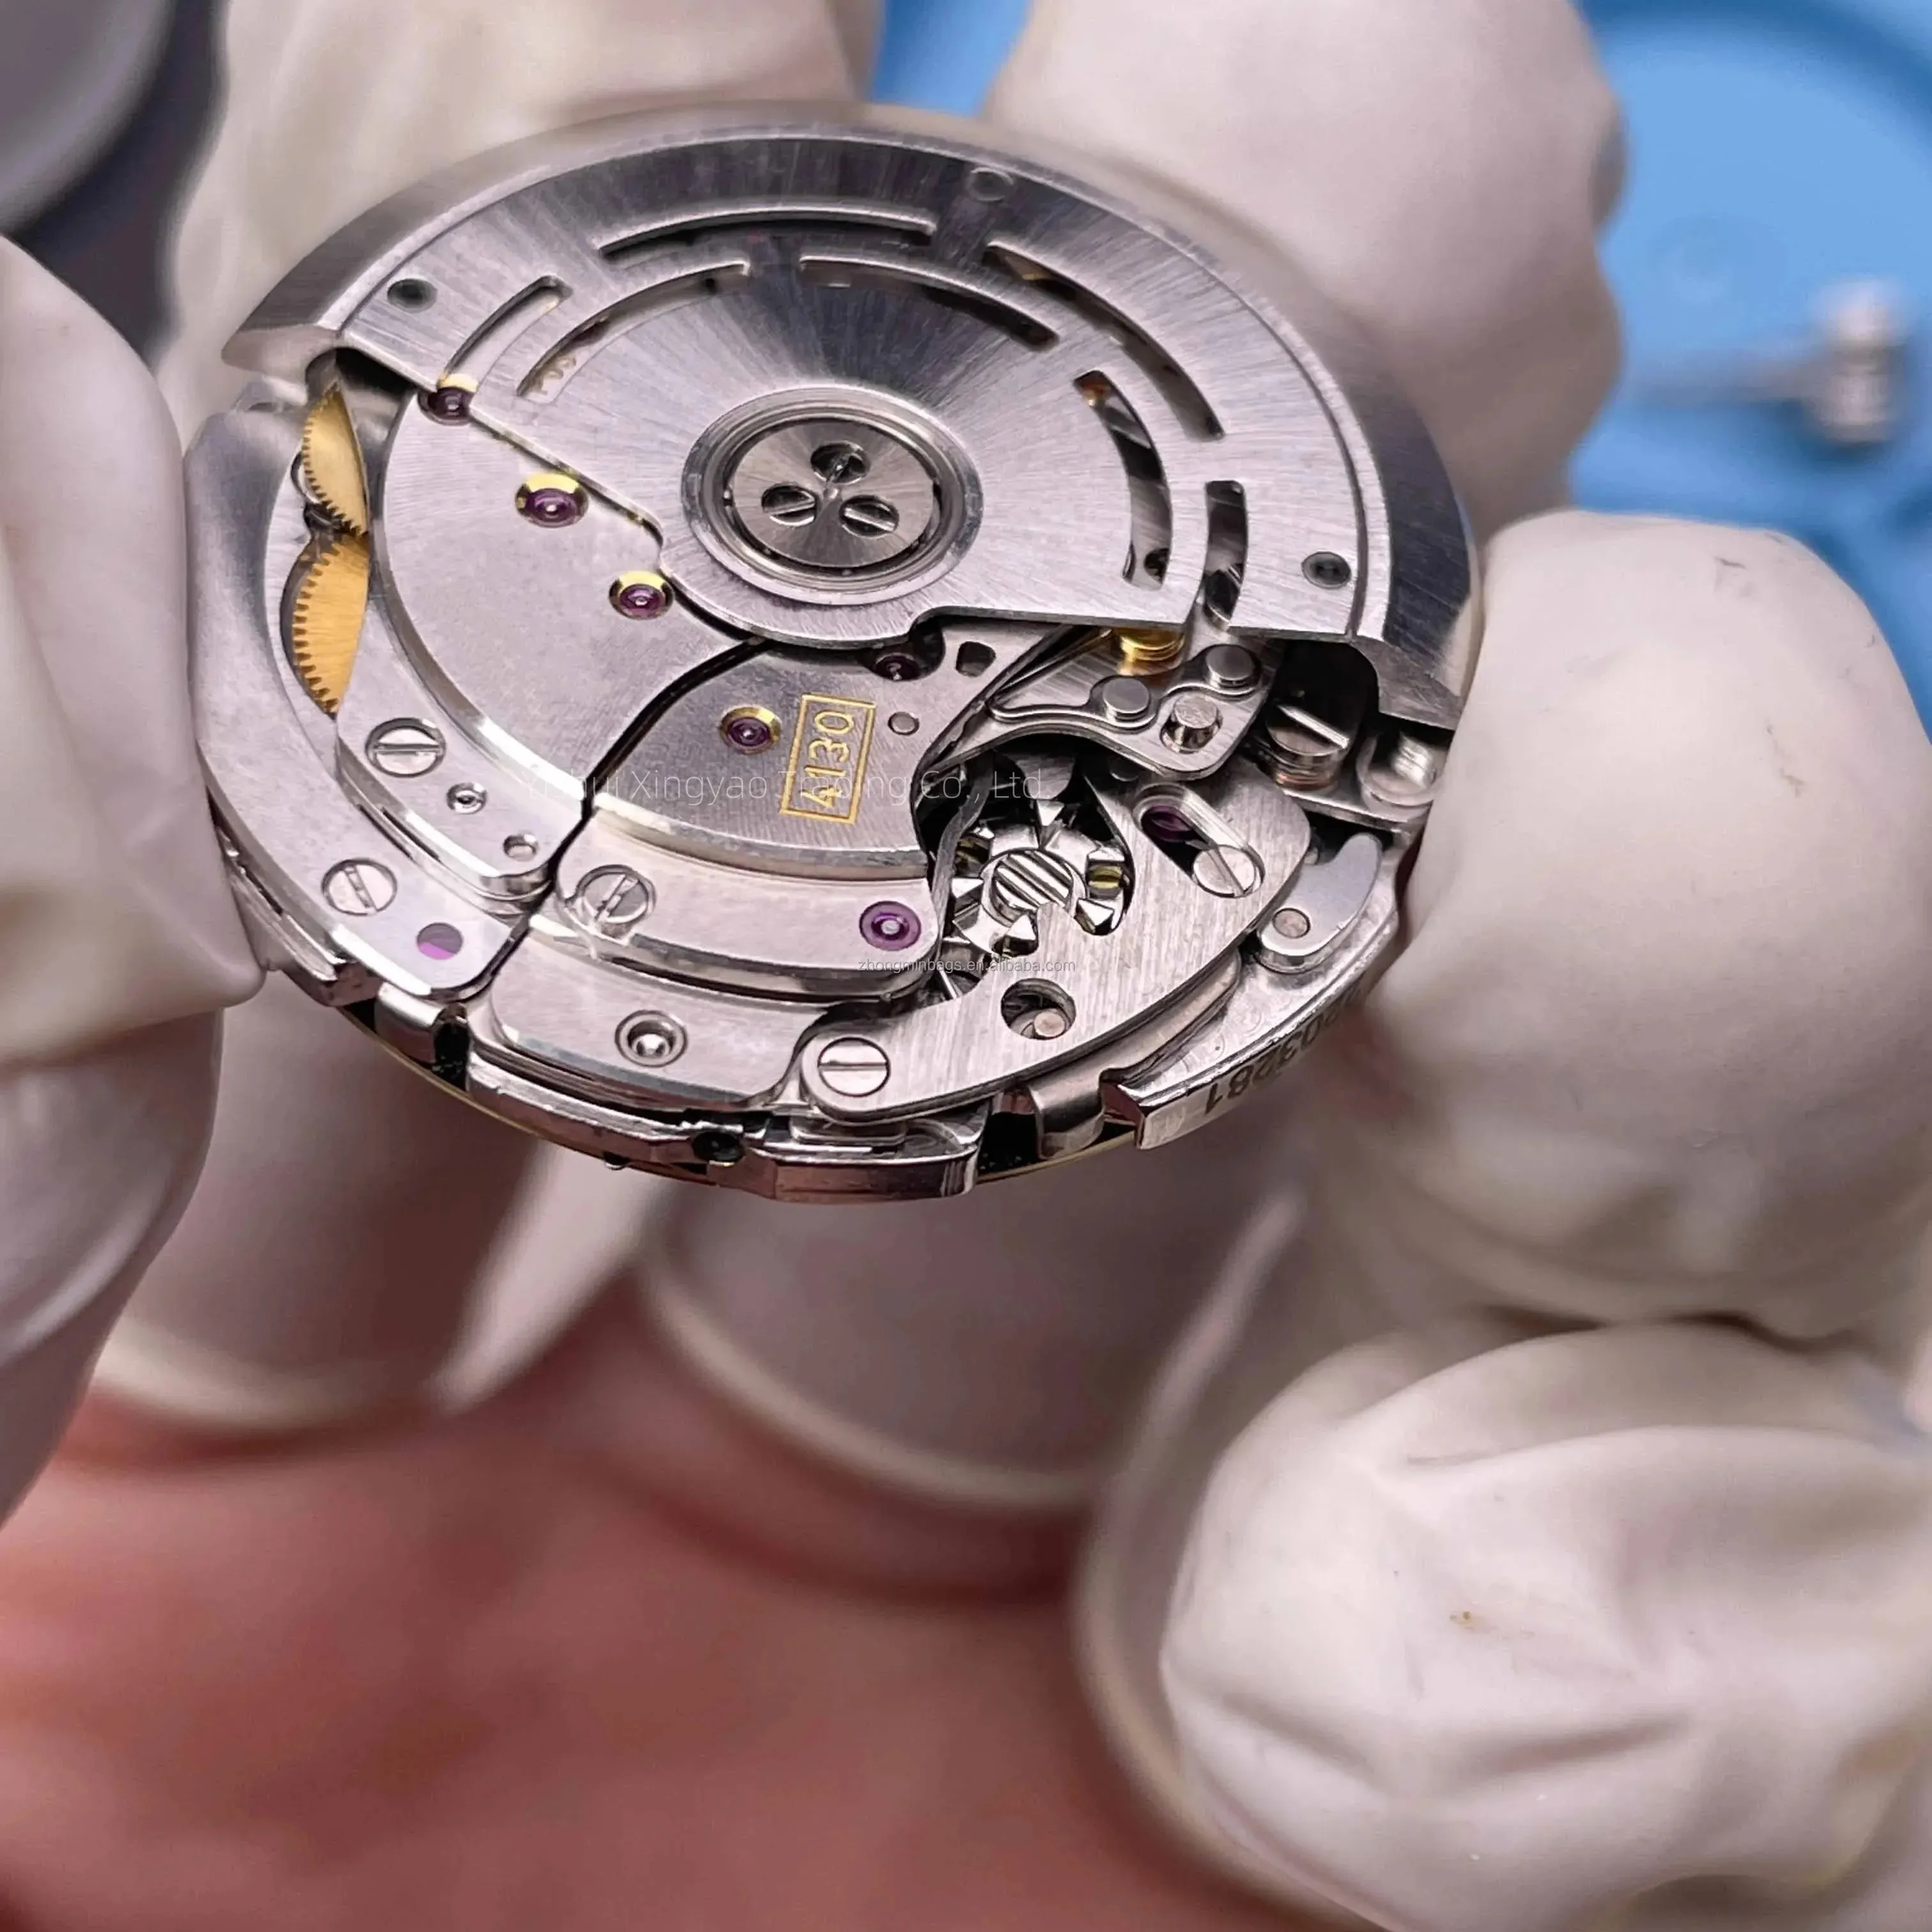 904LClean 7750 montre chronographe en acier inoxydable 3 petit cadran noir montre 4130 automatique mécanique épaisseur 12.3mm montre